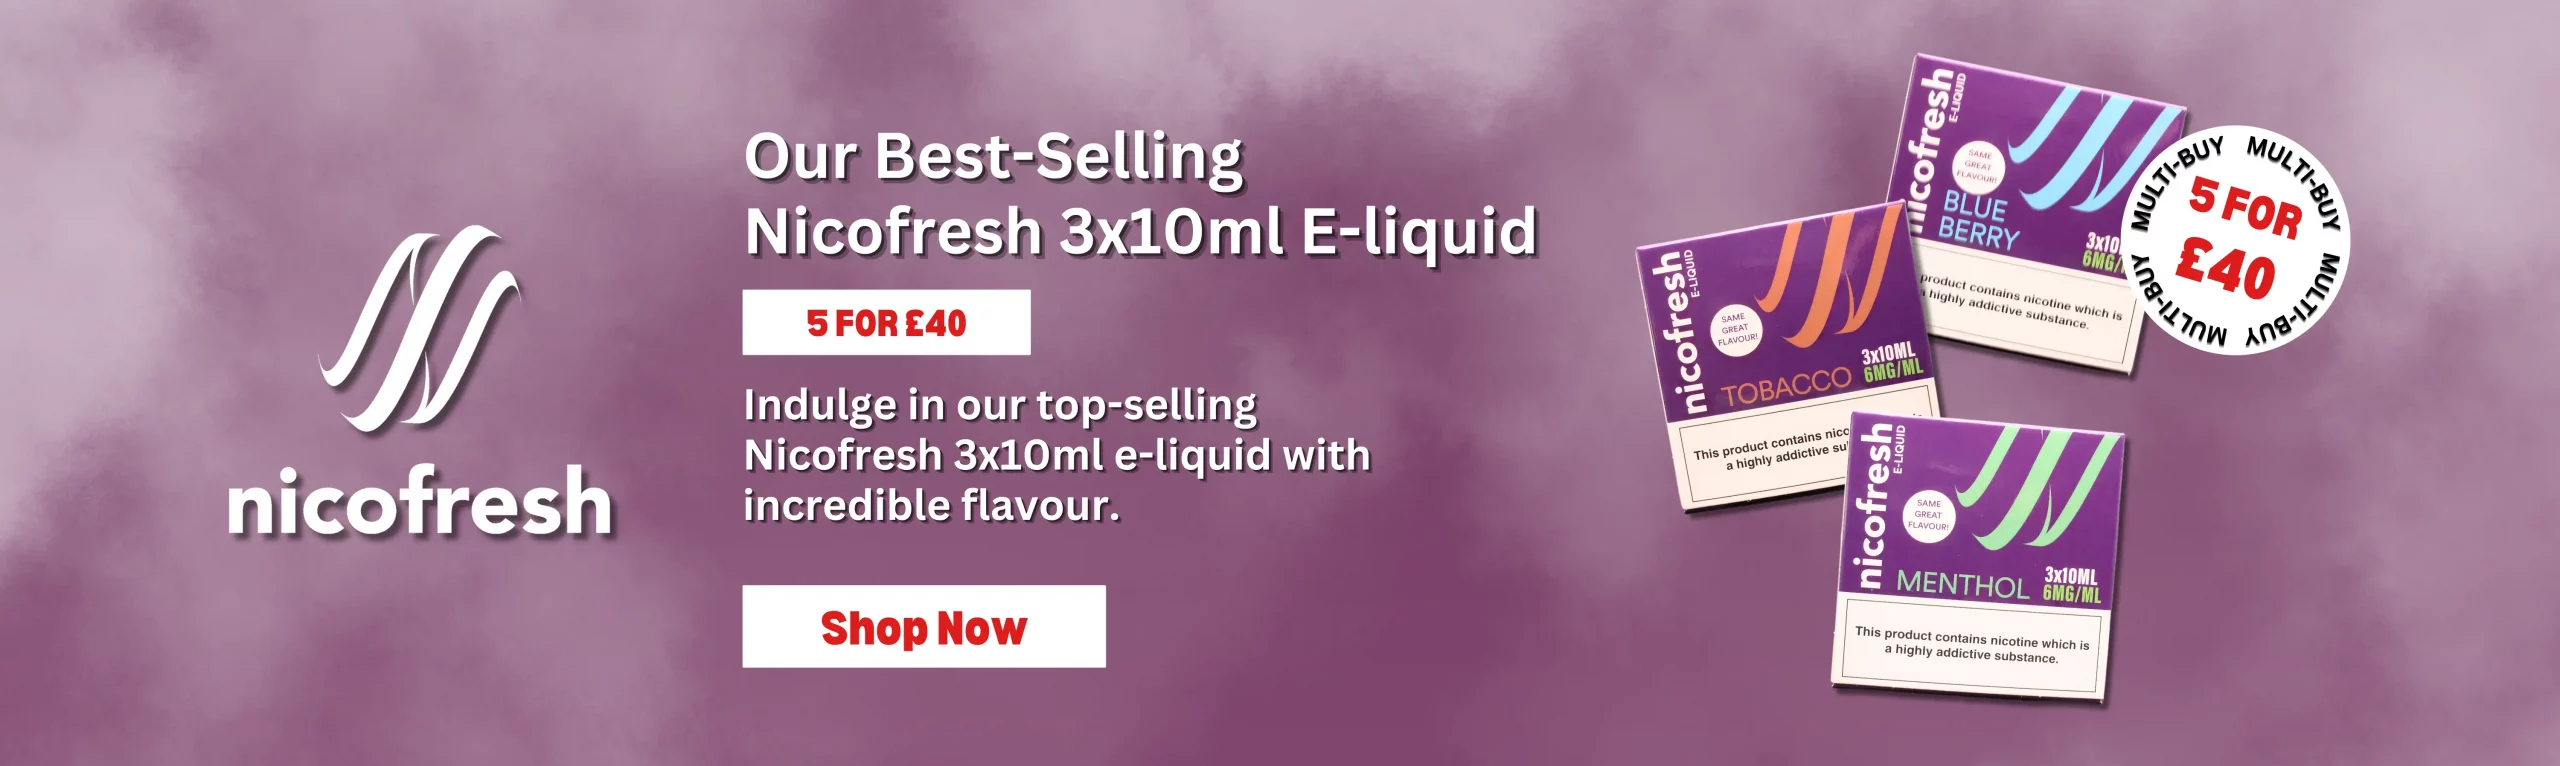 5 FOR 4 on E-Liquids